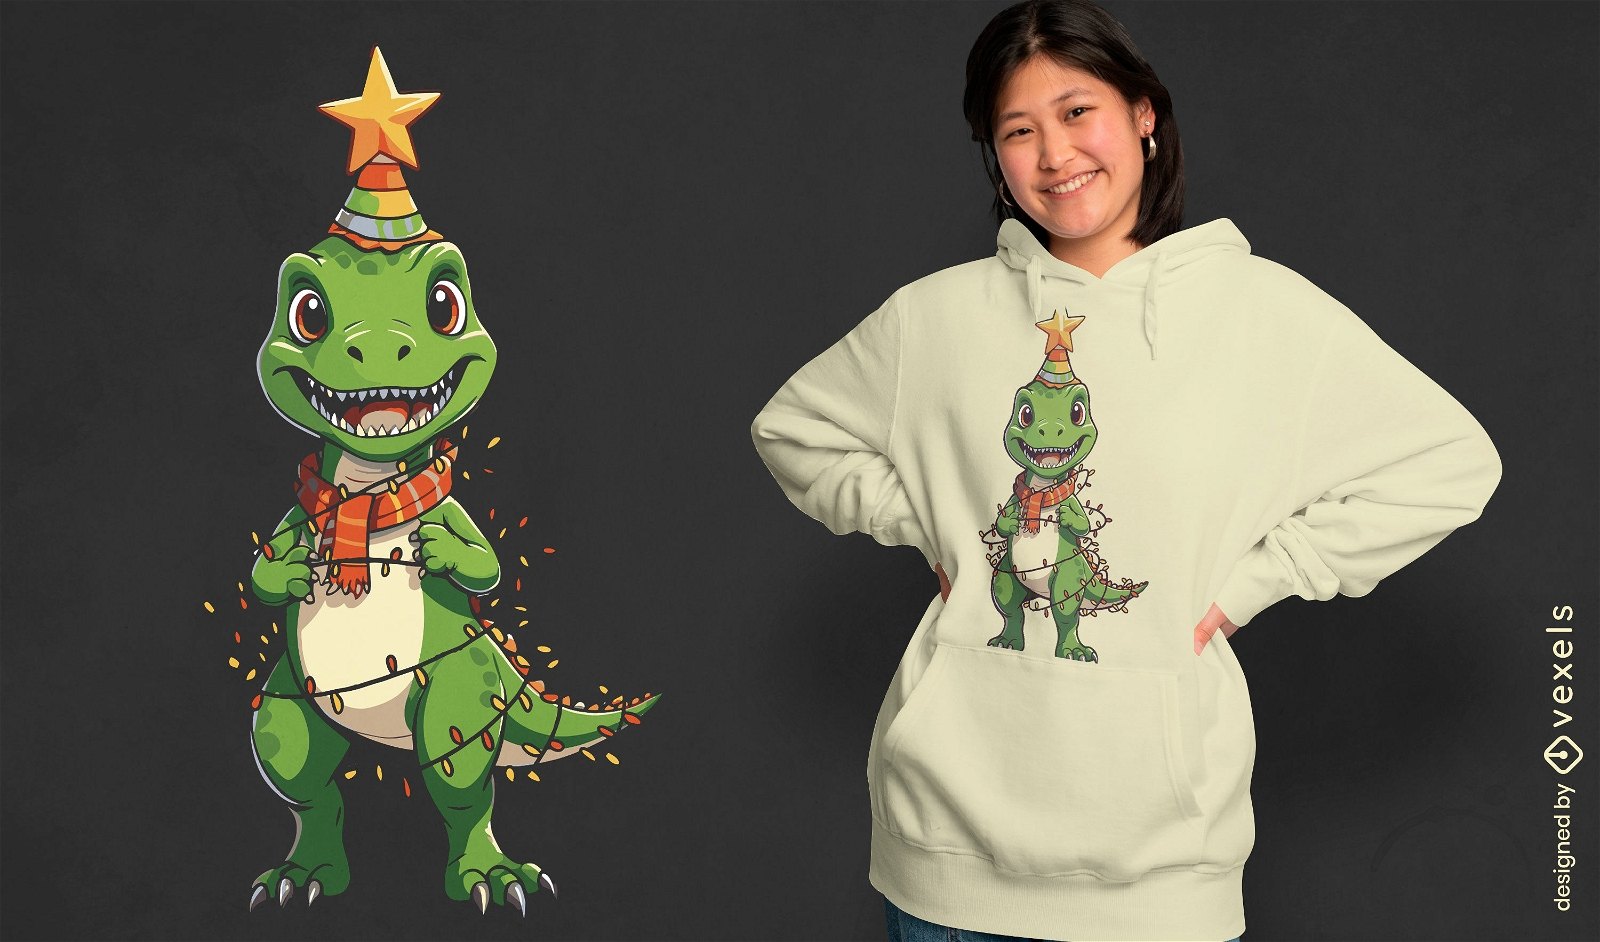 Festive dinosaur t-shirt design